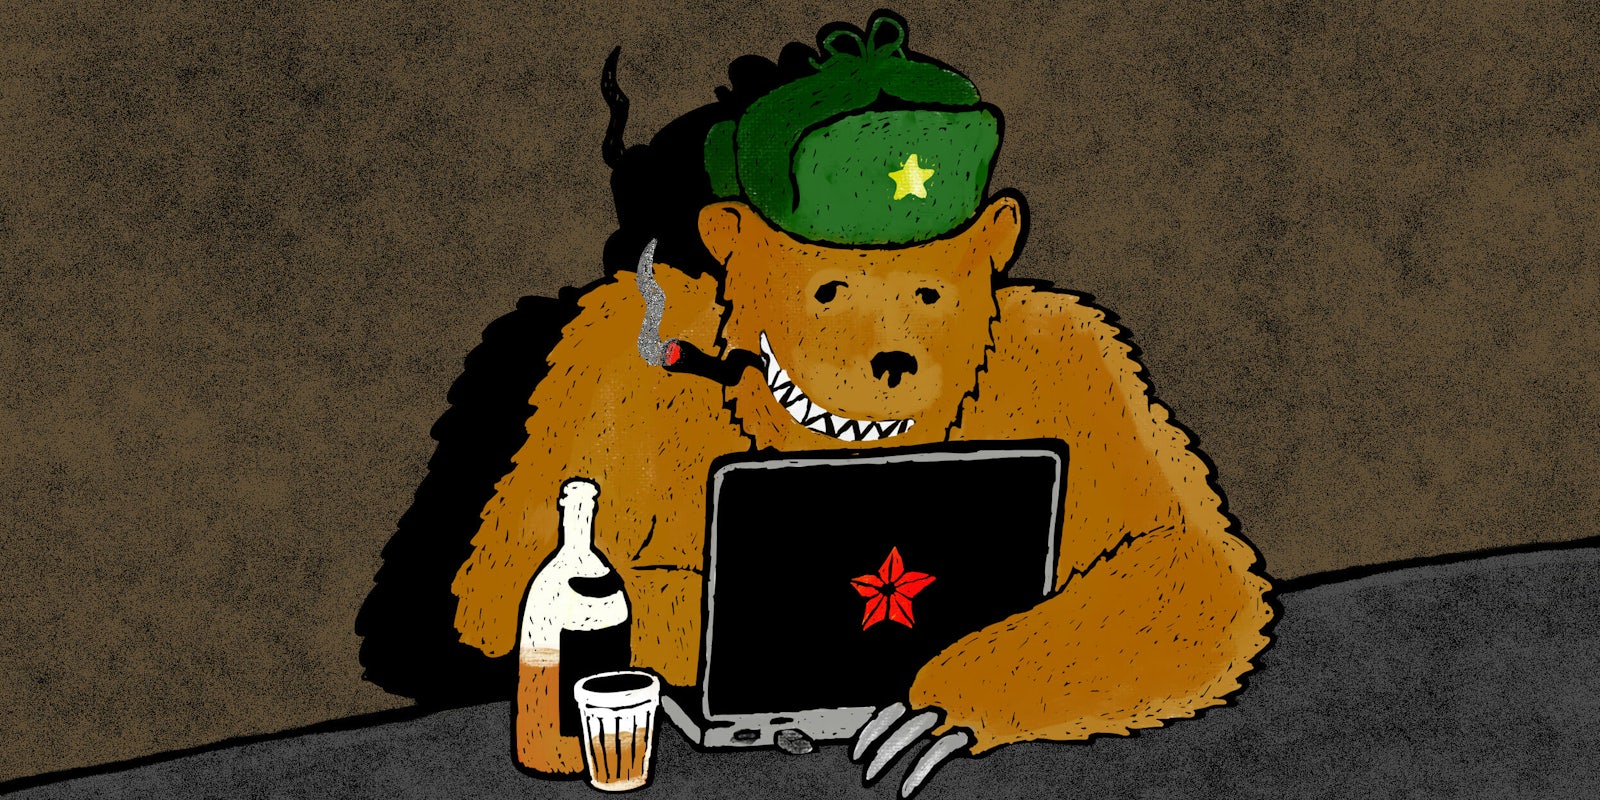 Bear on laptop wearing Russian ushanka hat, smoking cigar, and drinking